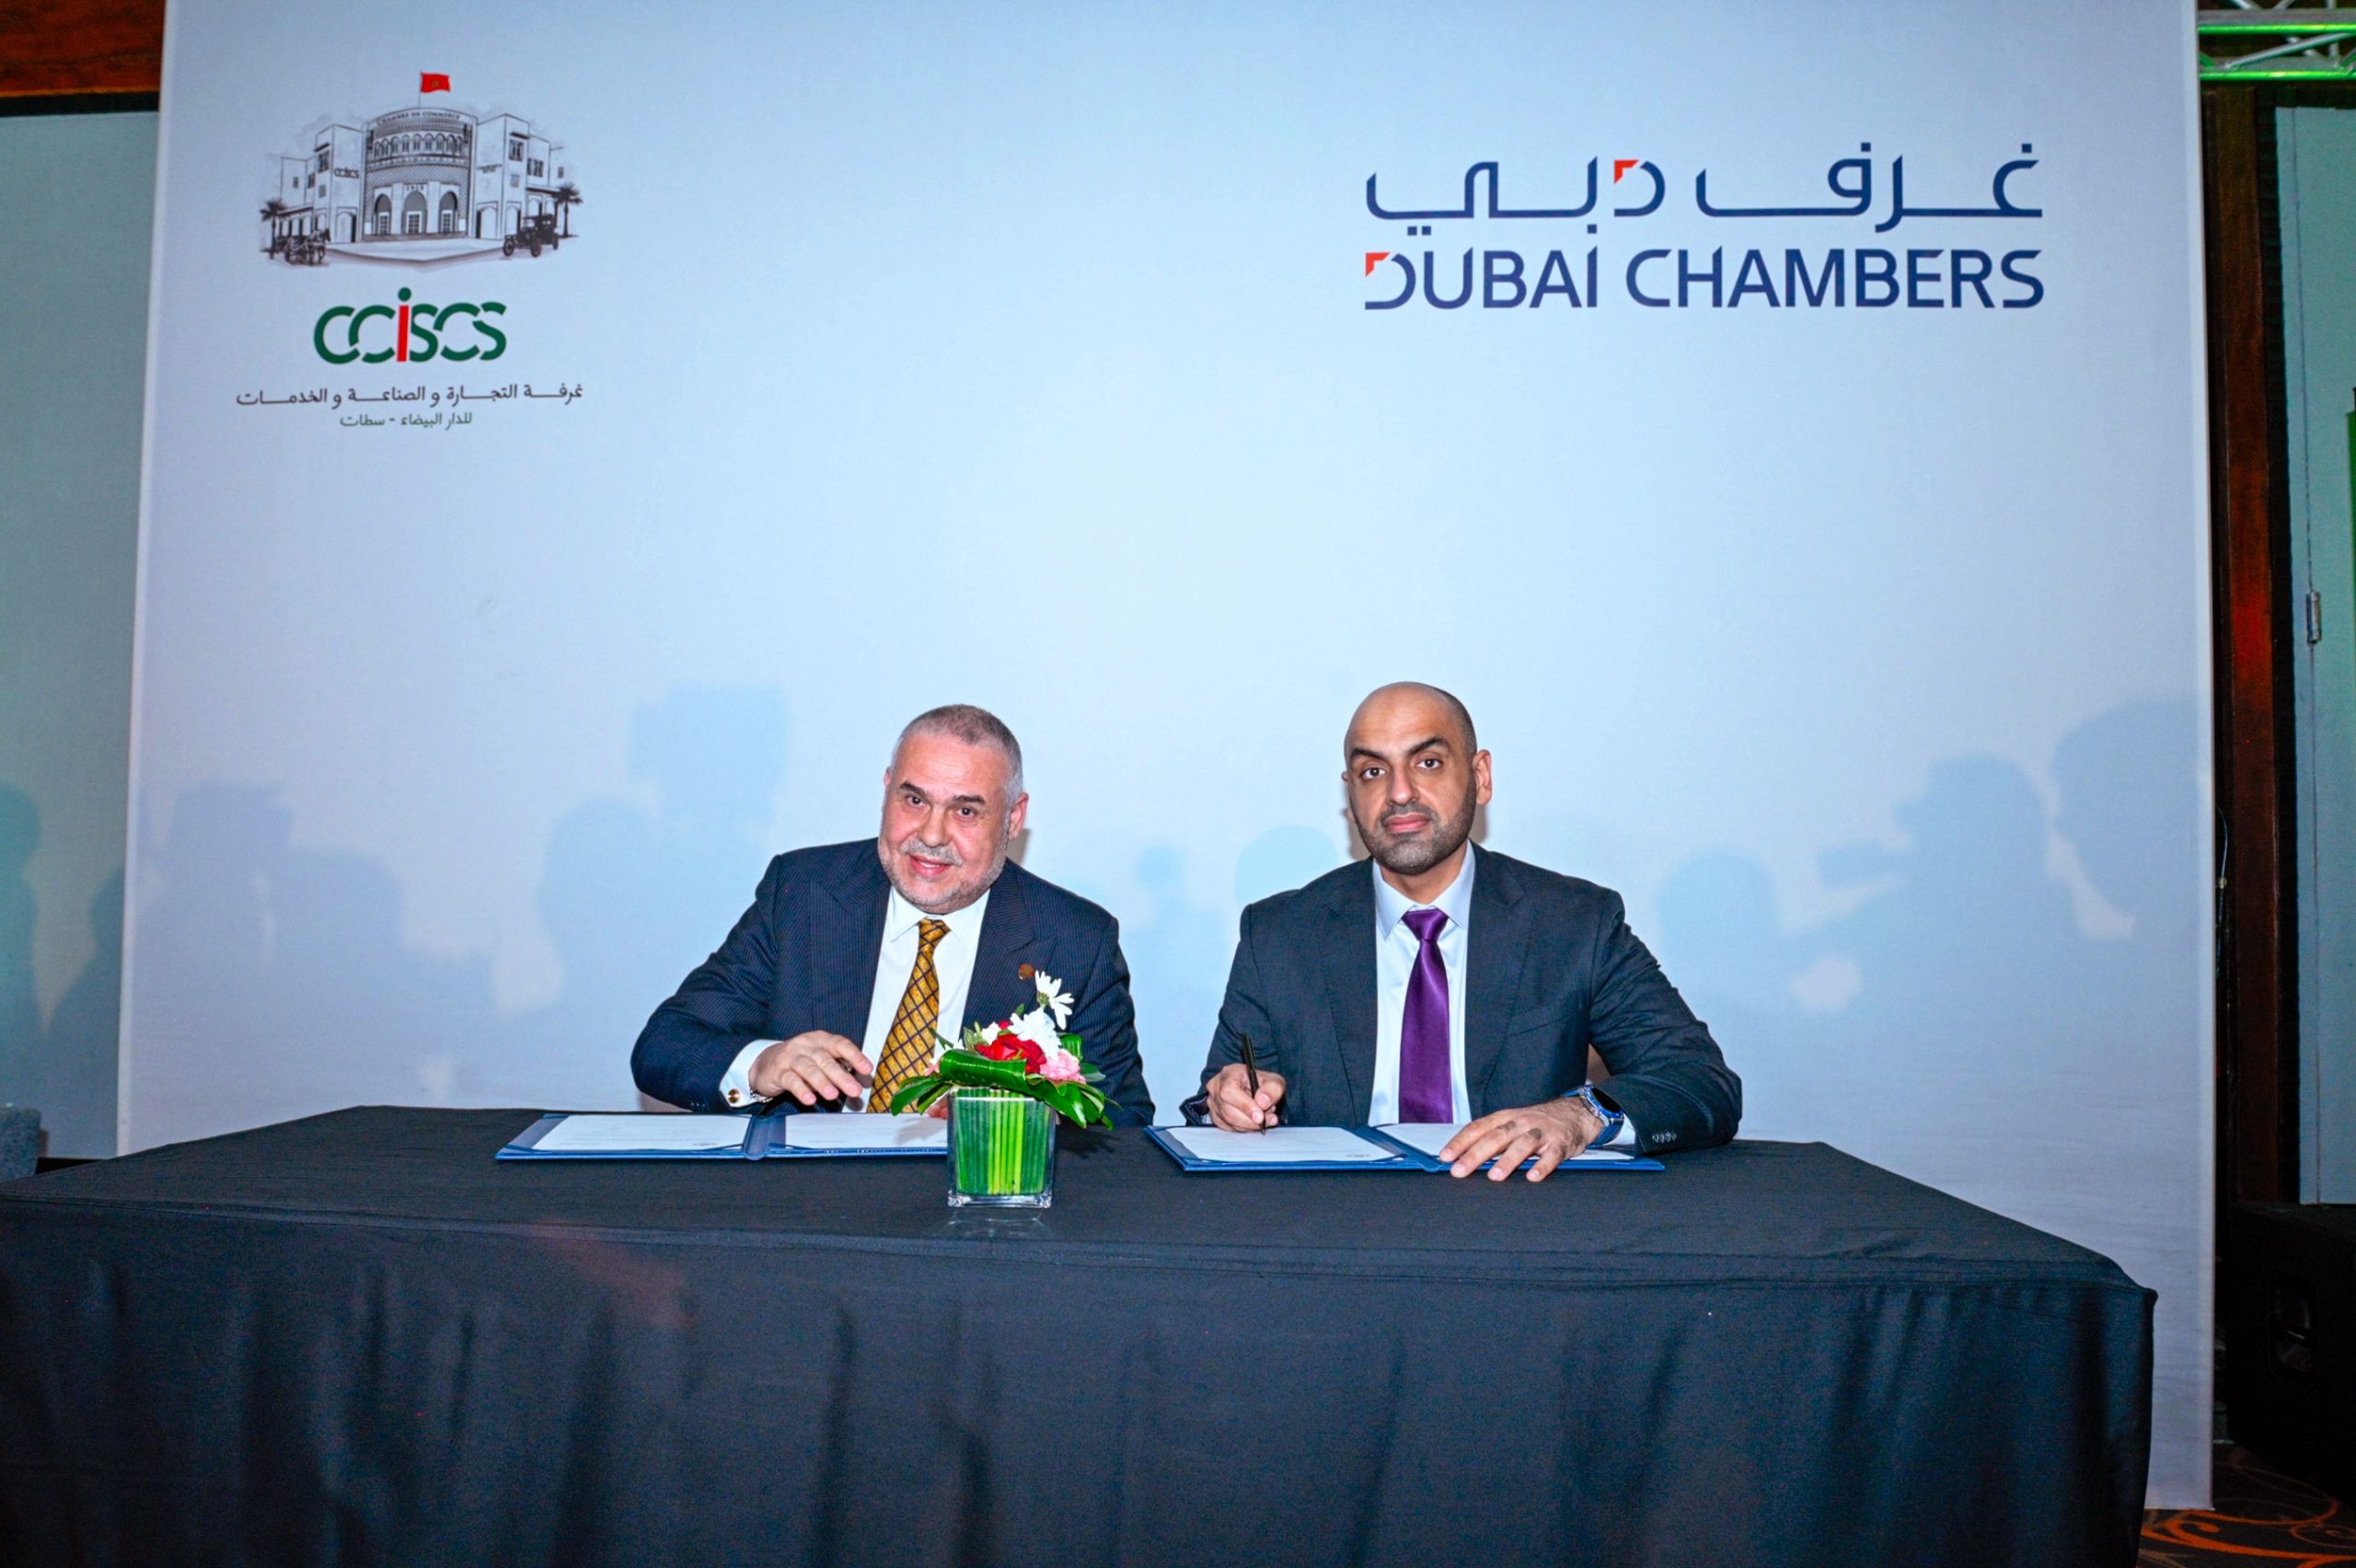 اختتام فعاليات بعثة غرفة دبي العالمية في الدار البيضاء بـ 300 اجتماعًا لتعزيز فرص الأعمال بين شركات دبي والمغرب